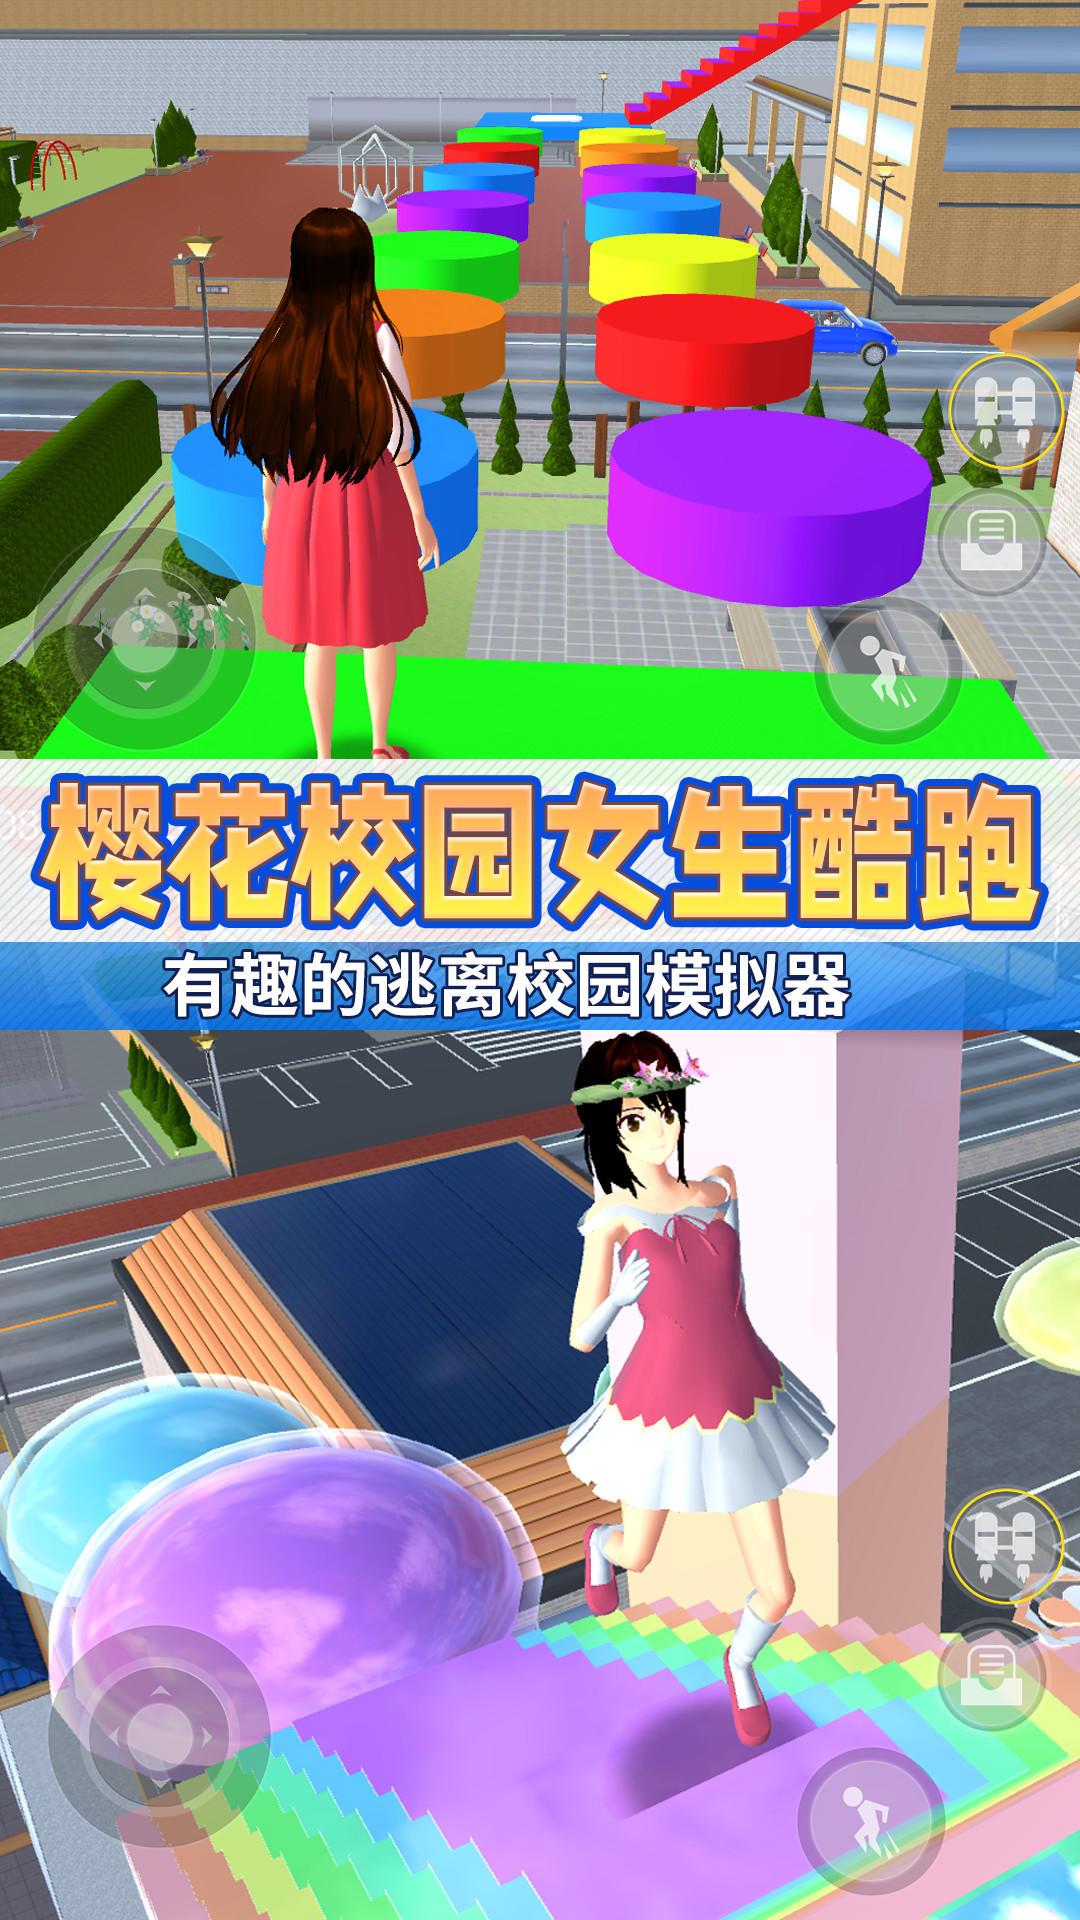 Anime School Girl Parkour 3D遊戲截圖